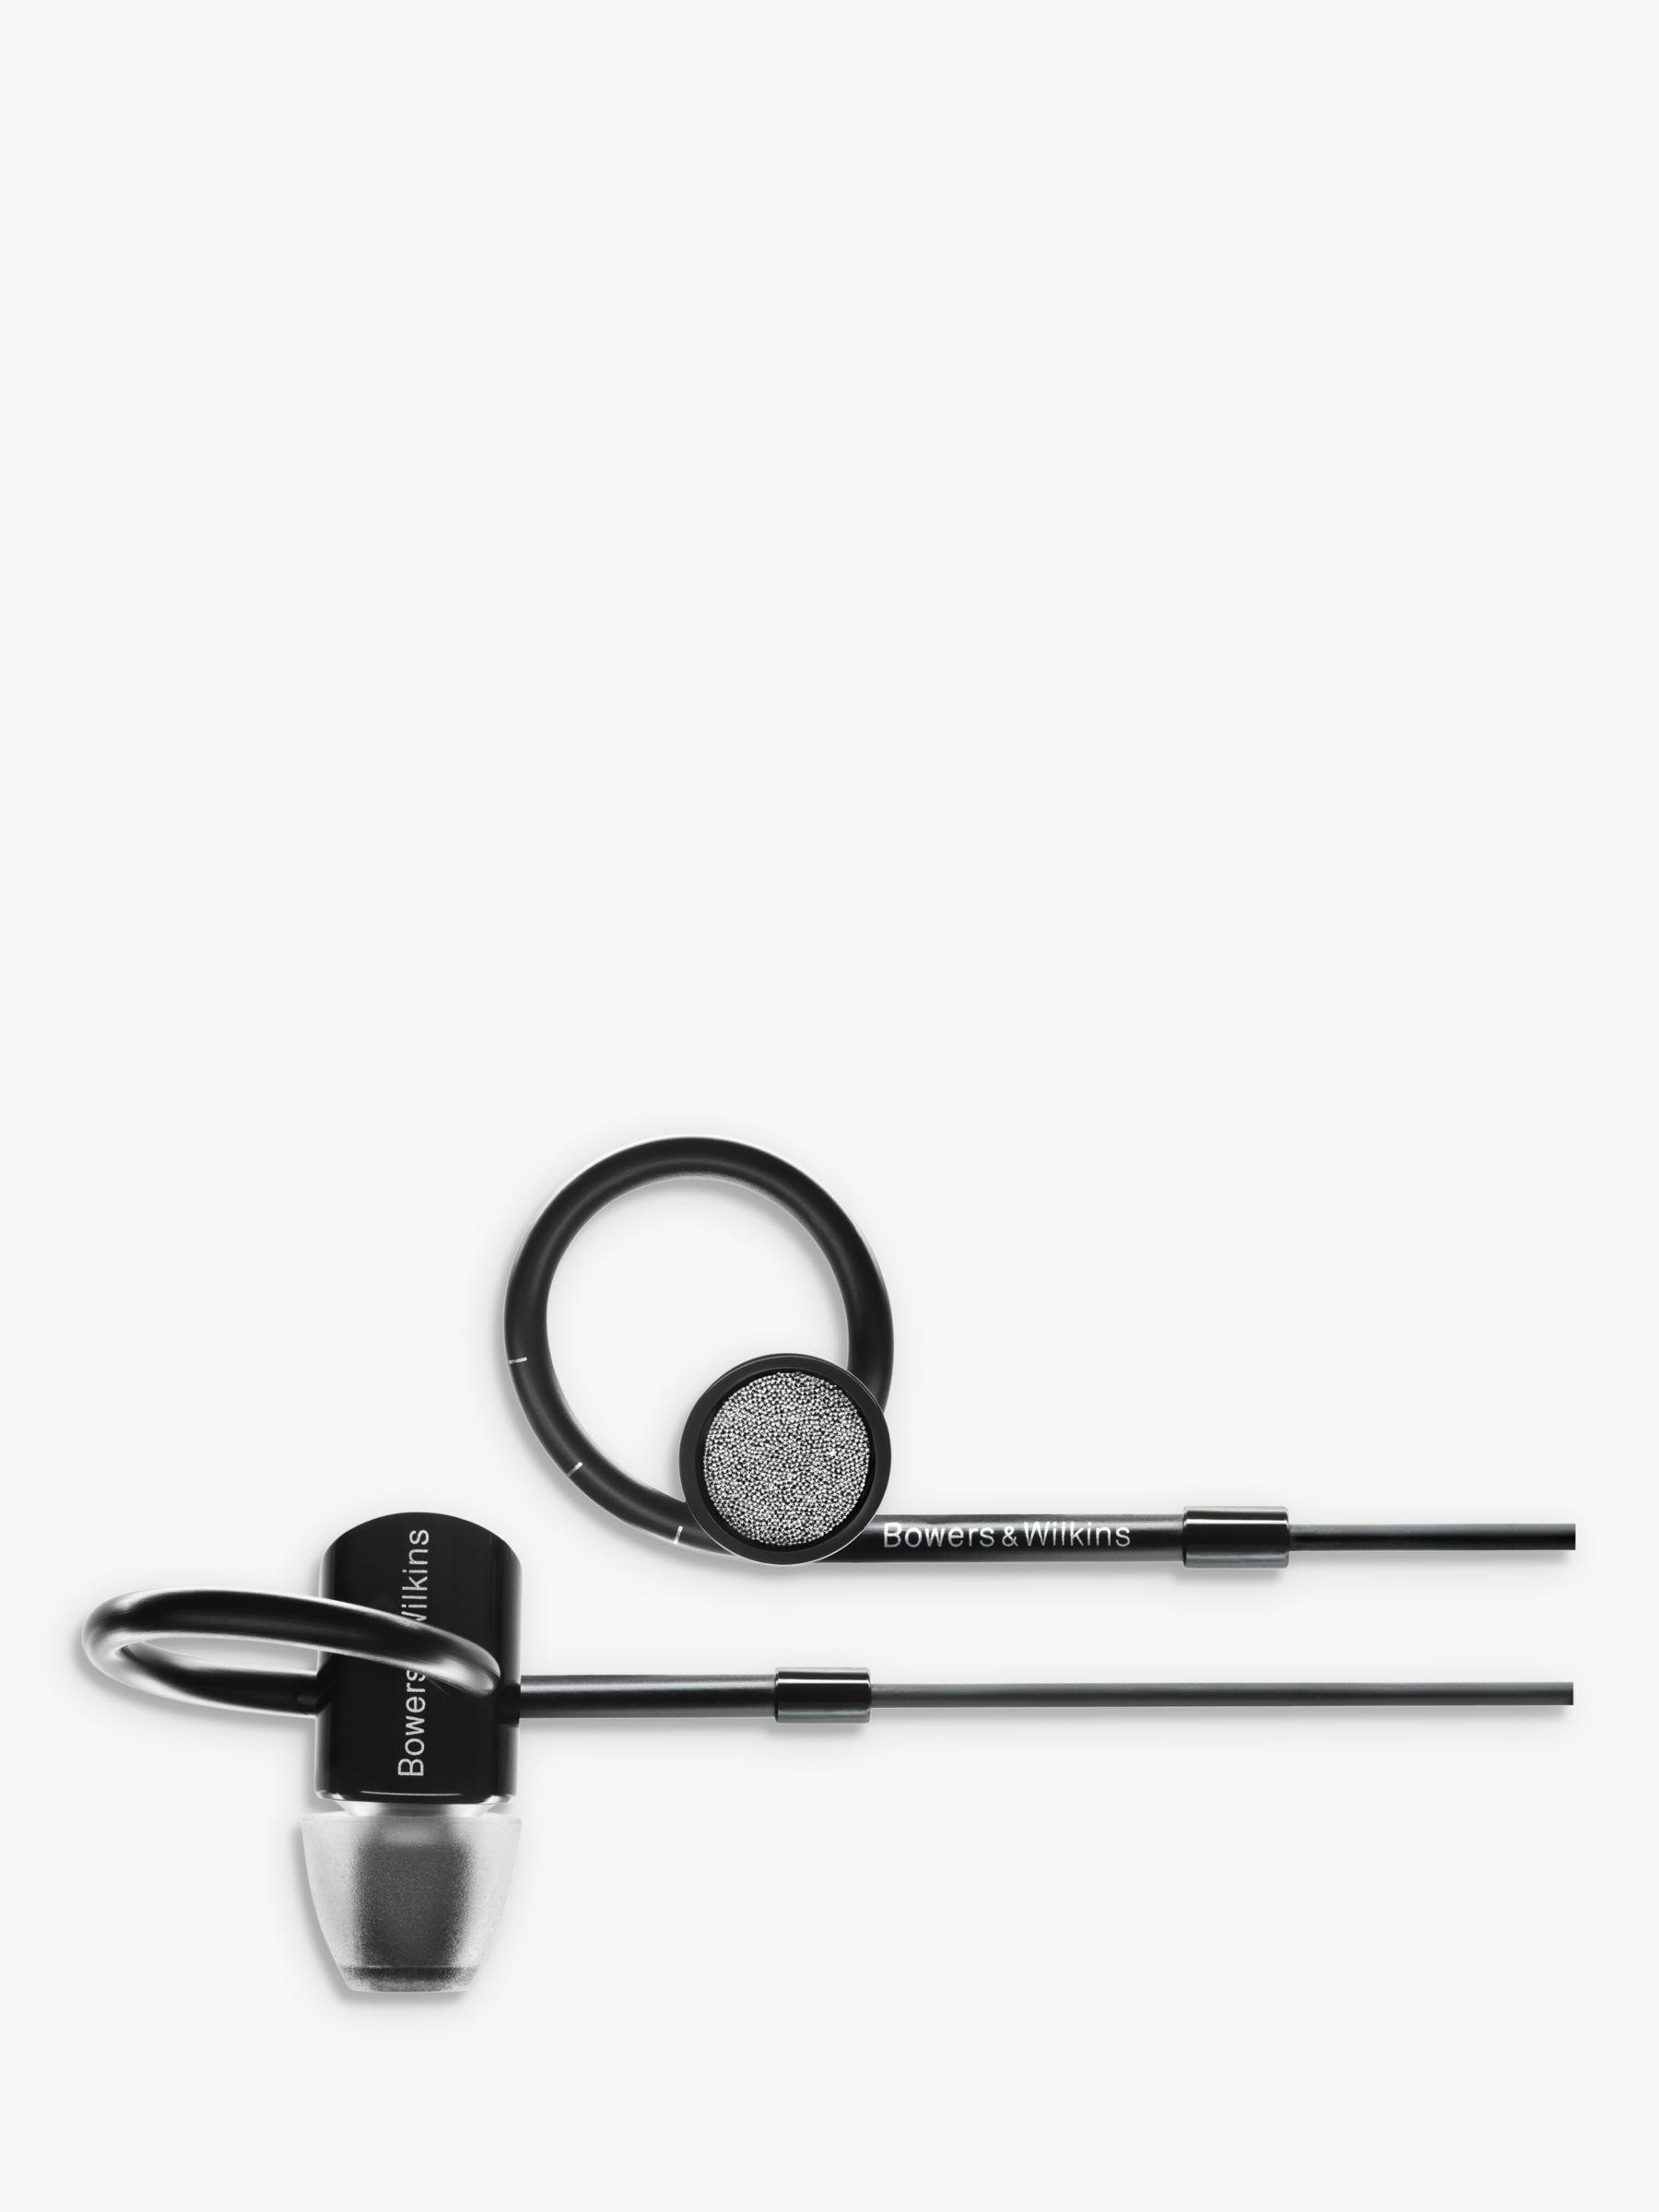 Bowers & Wilkins C5 Series 2 In-Ear Headphones, Black